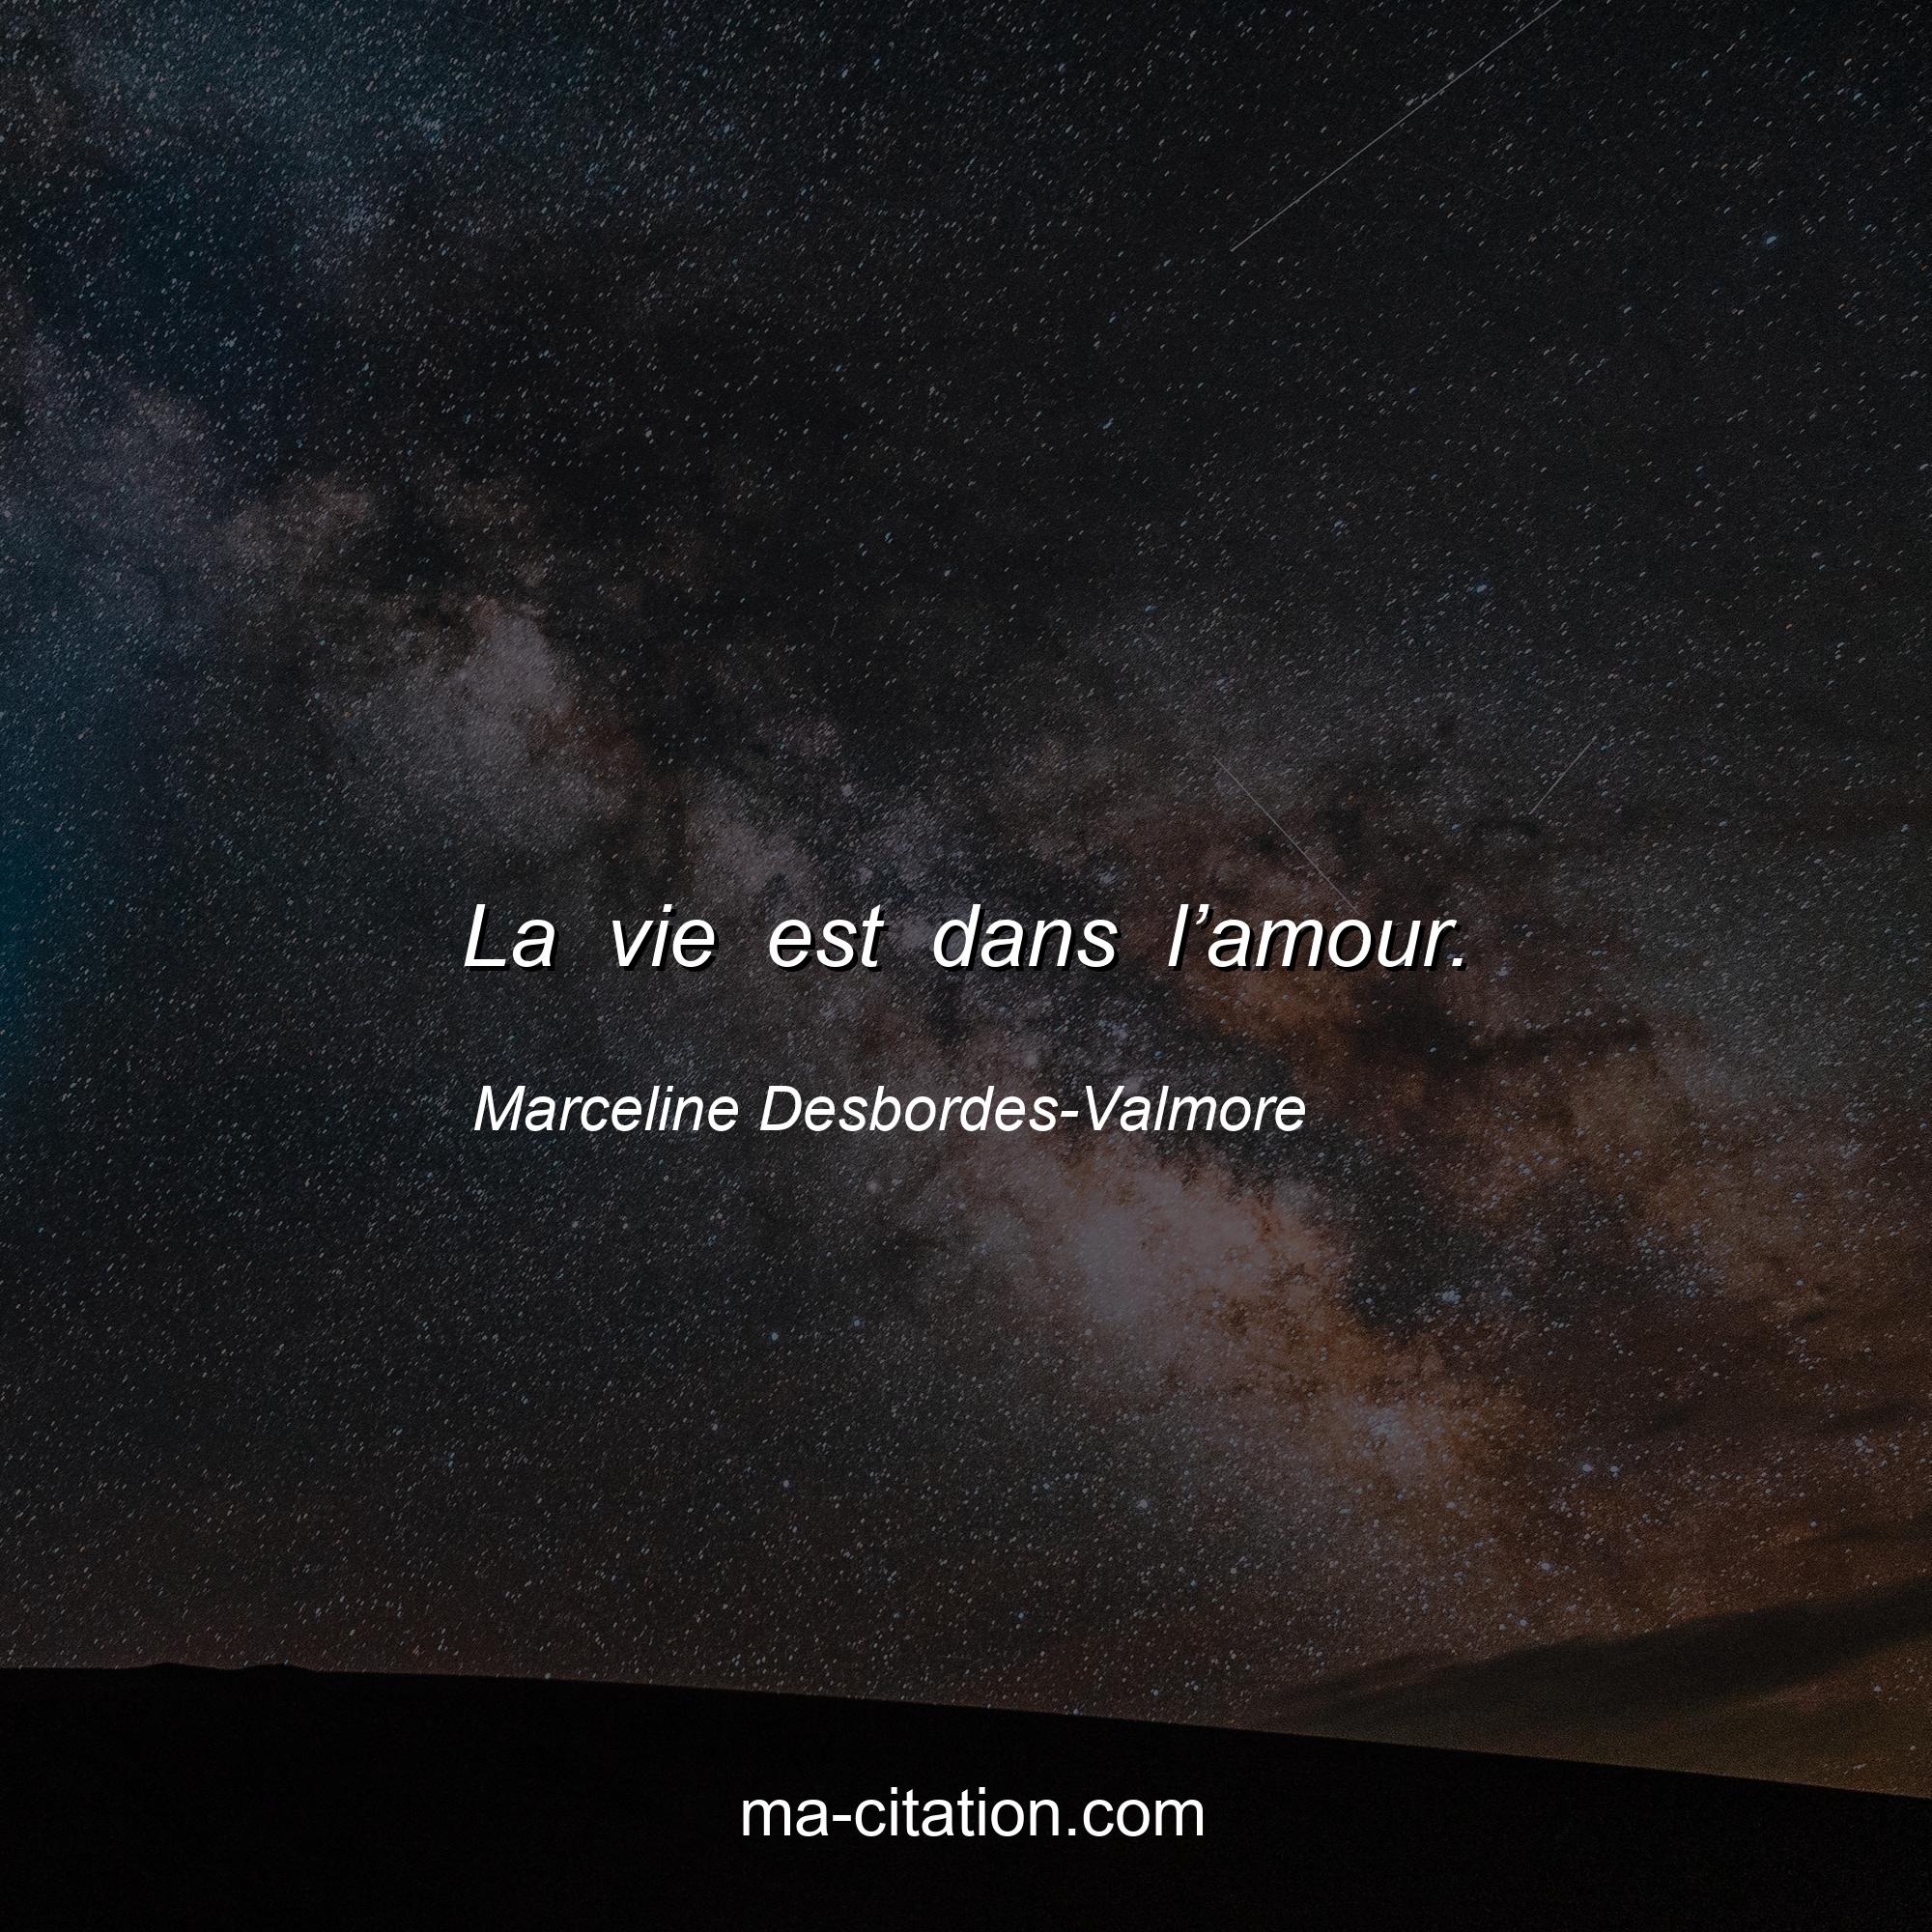 Marceline Desbordes-Valmore : La vie est dans l’amour.